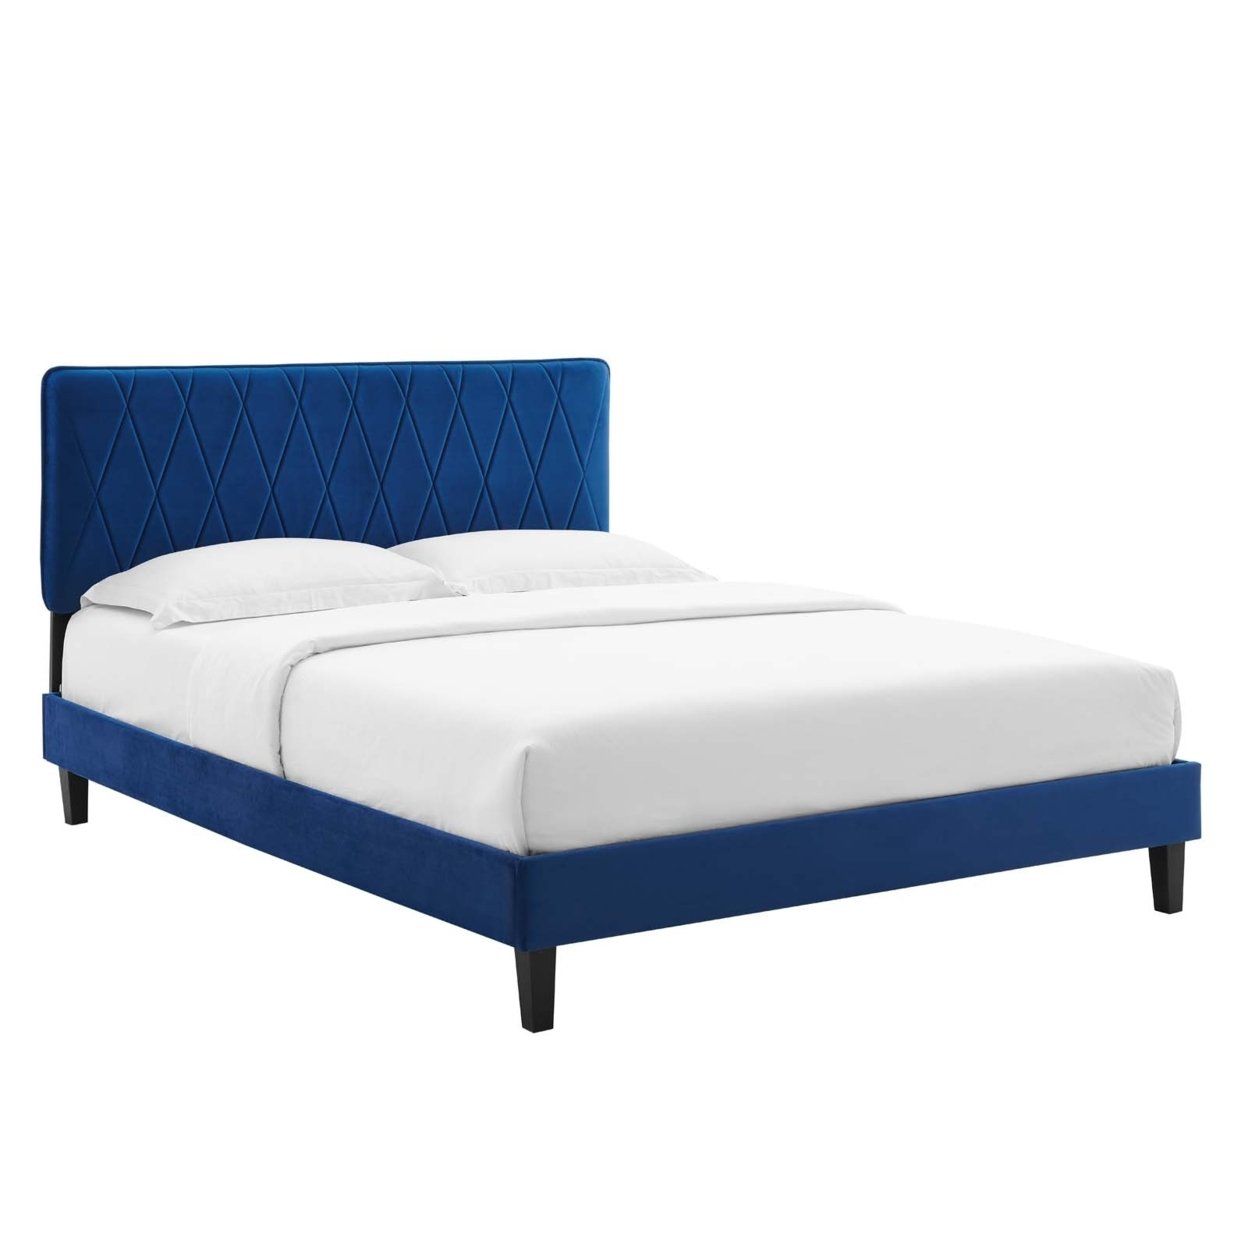 King Bed, Navy Blue Velvet, Diamond Stiching, Wood Legs